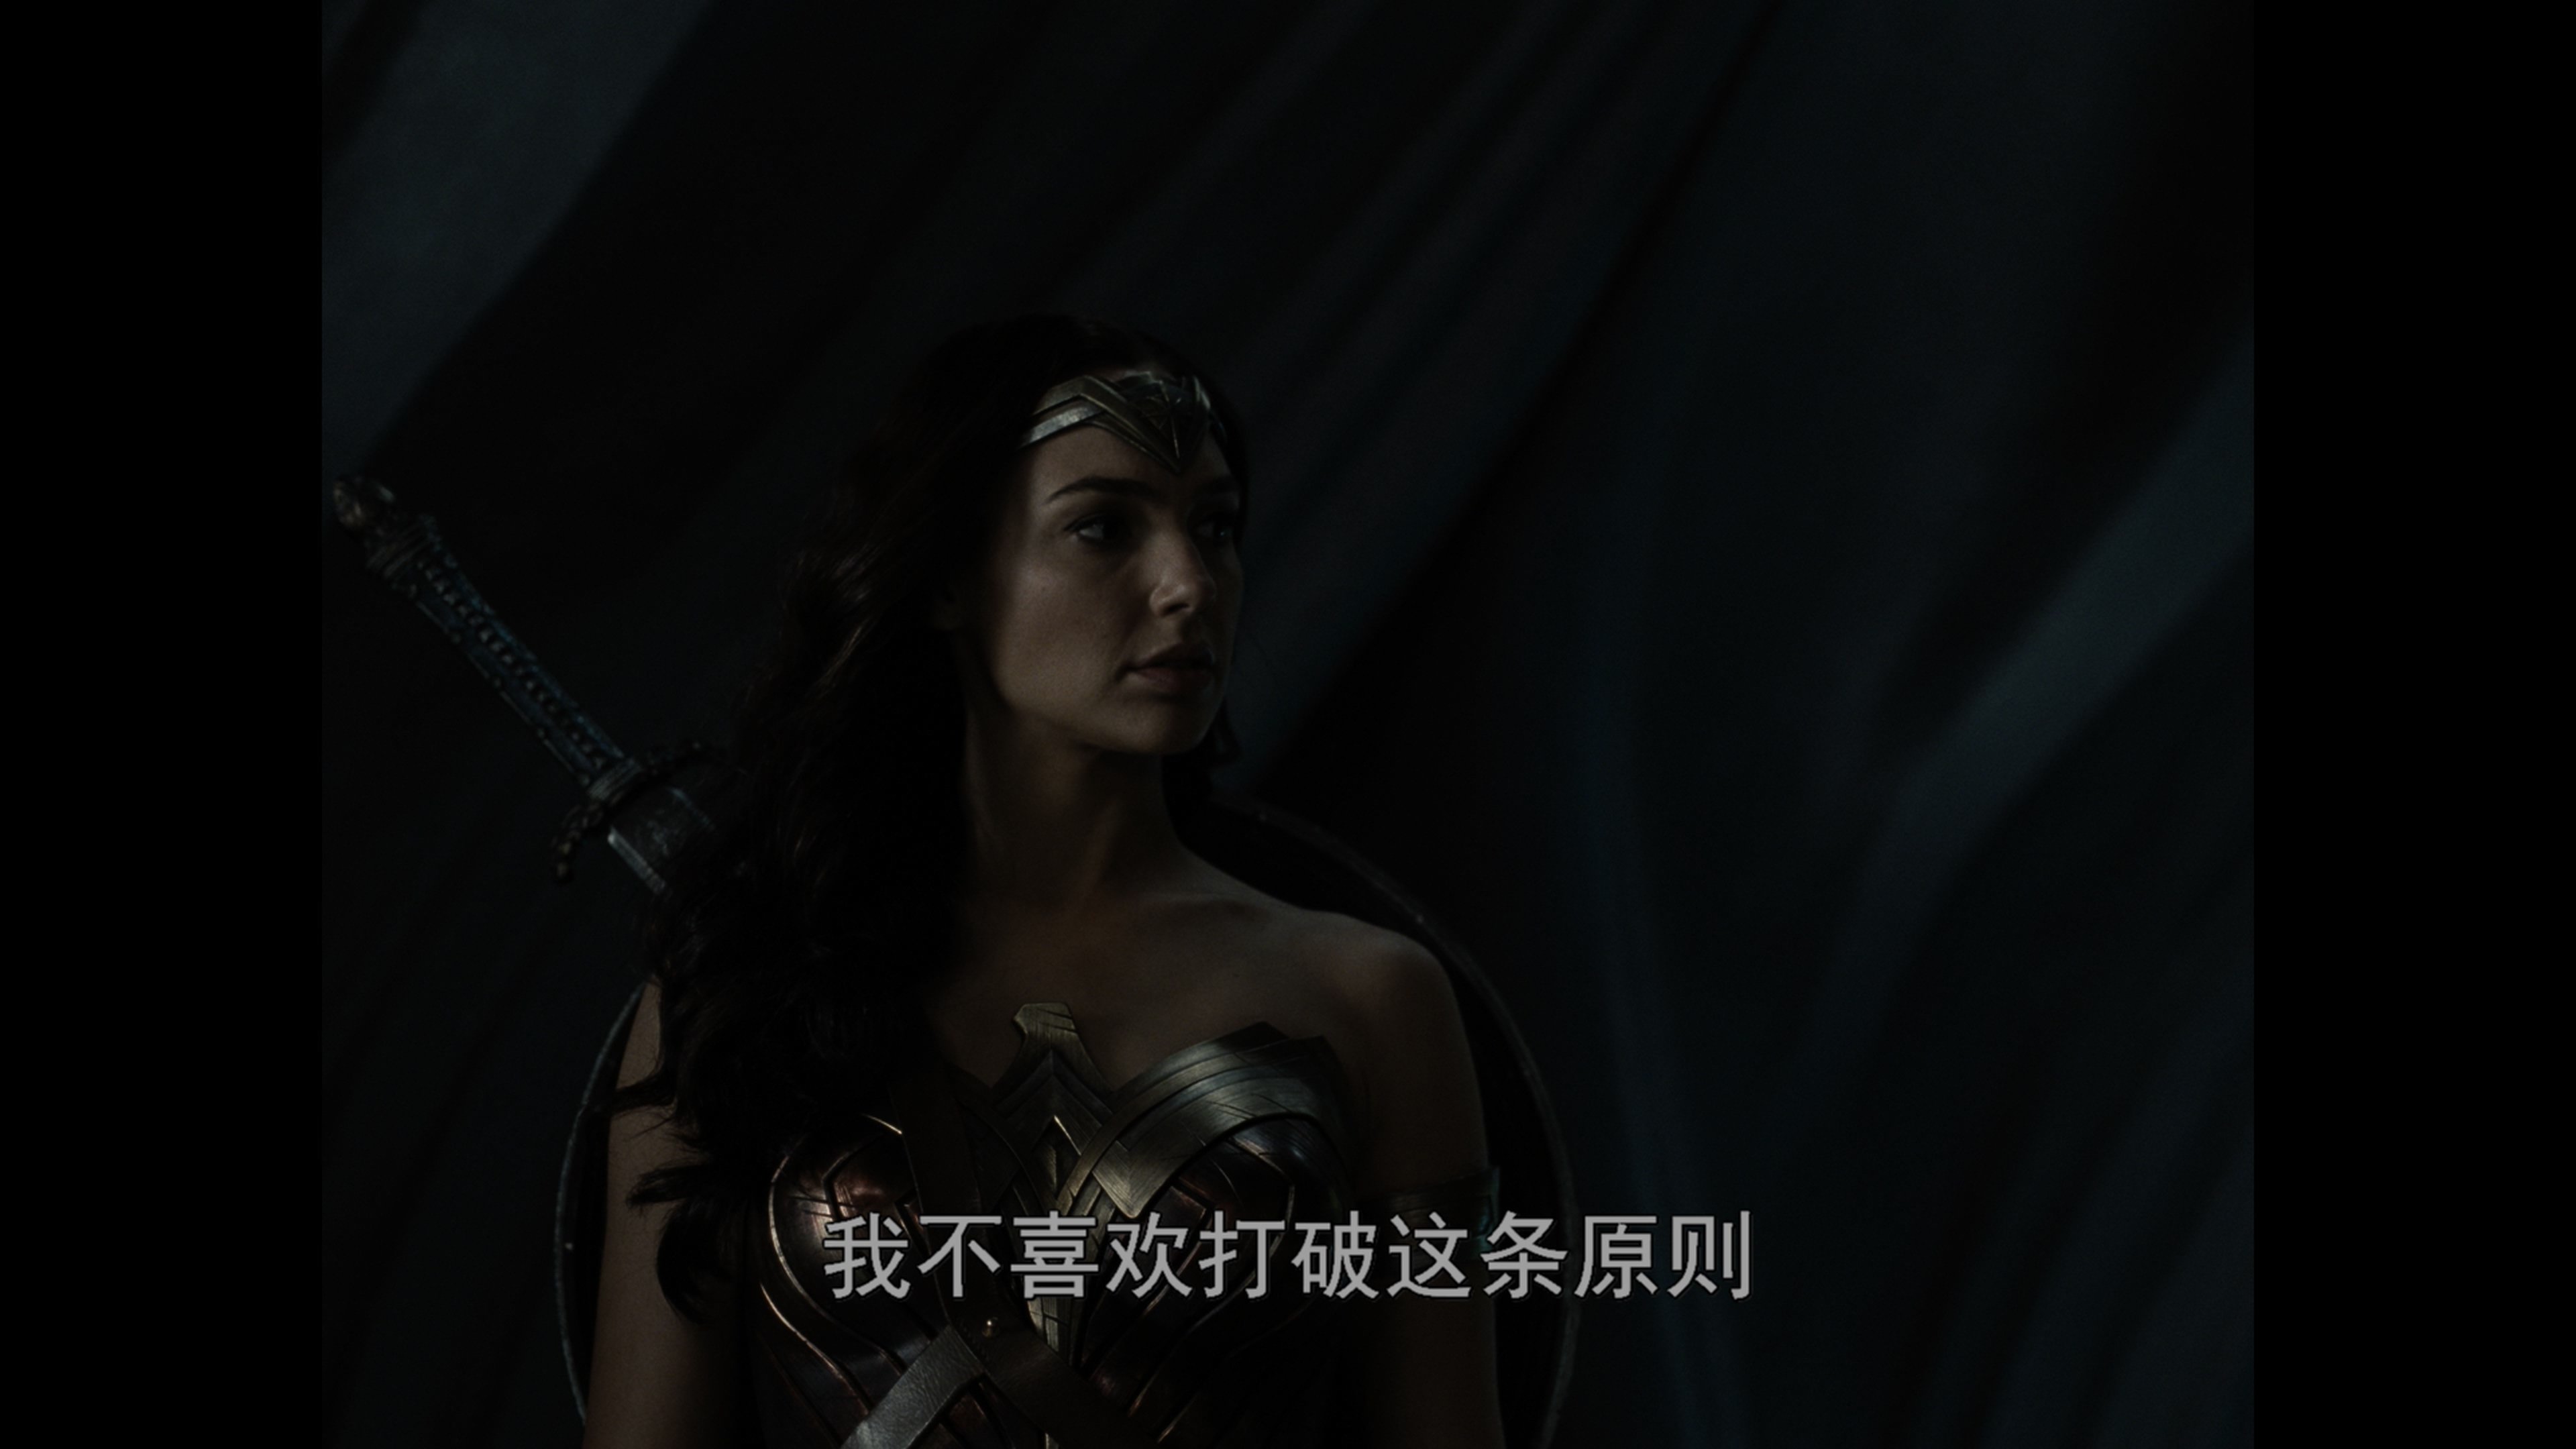 [扎克·施奈德版正义联盟][DiY官译简繁+简英繁英双语字幕] Zack Snyder's Justice League 2021 2160p EUR UHD Blu-ray HEVC Atmos TrueHD 7.1-DiY@HDHome    [136.22 GB ]-2.jpg